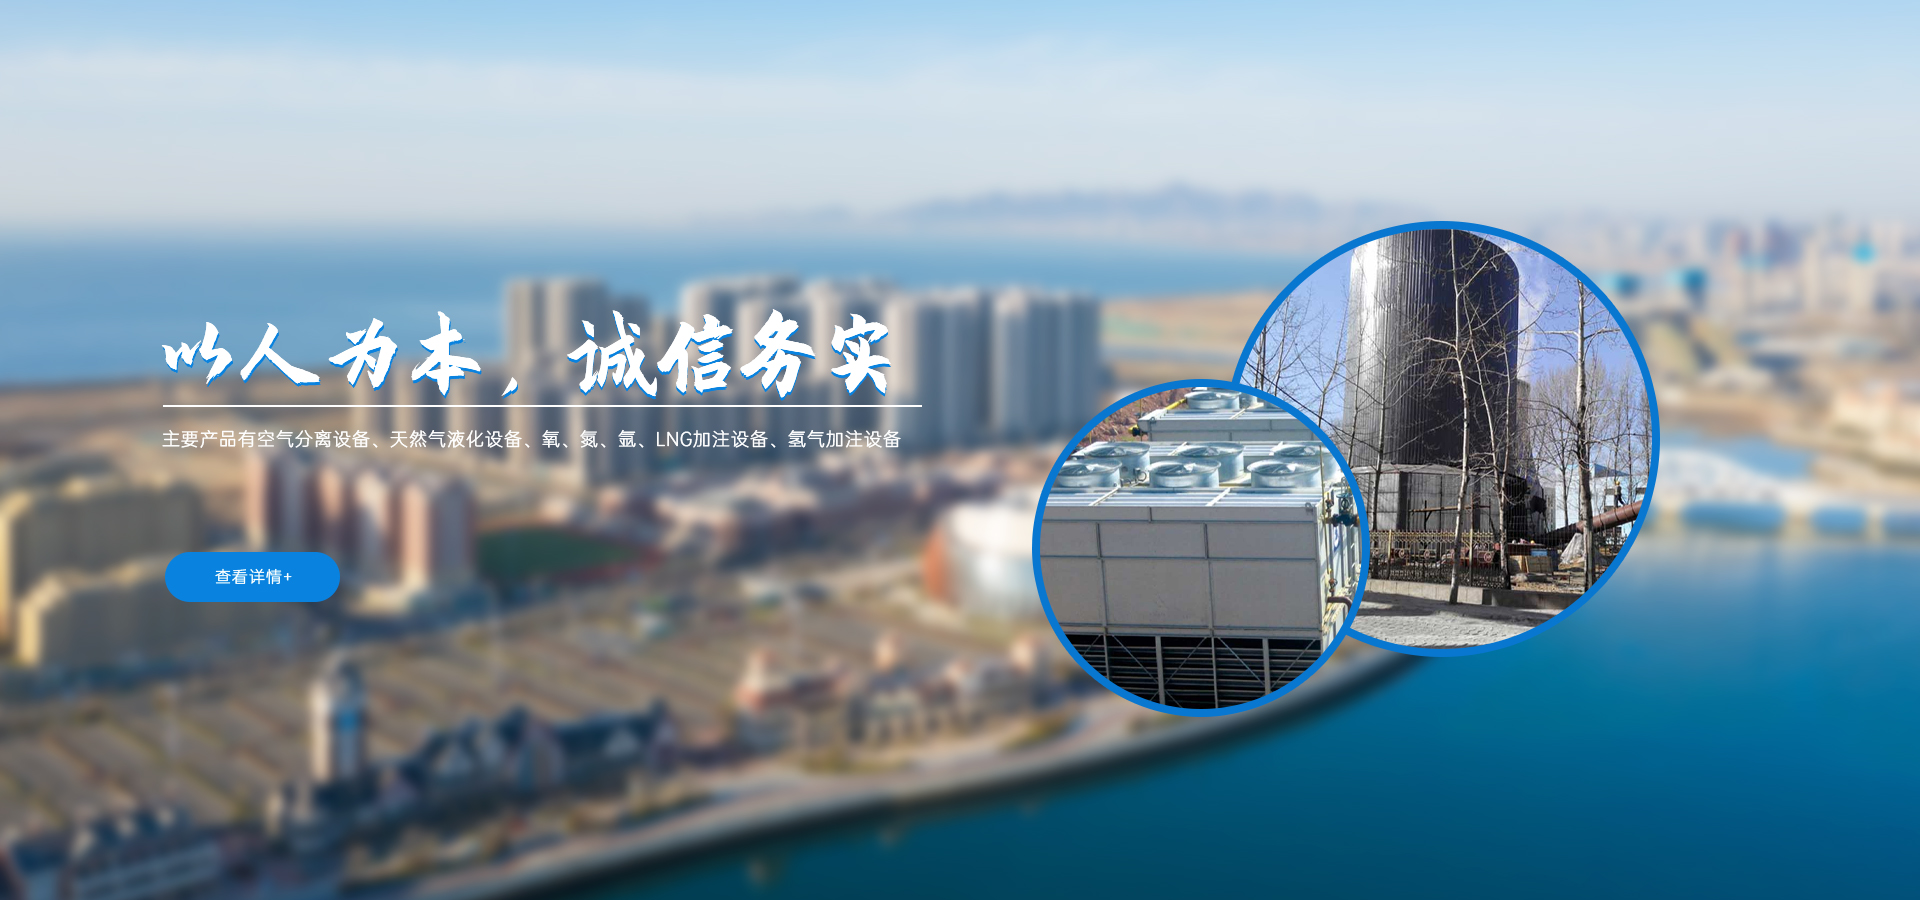 四川省簡陽空冷器制造有限公司